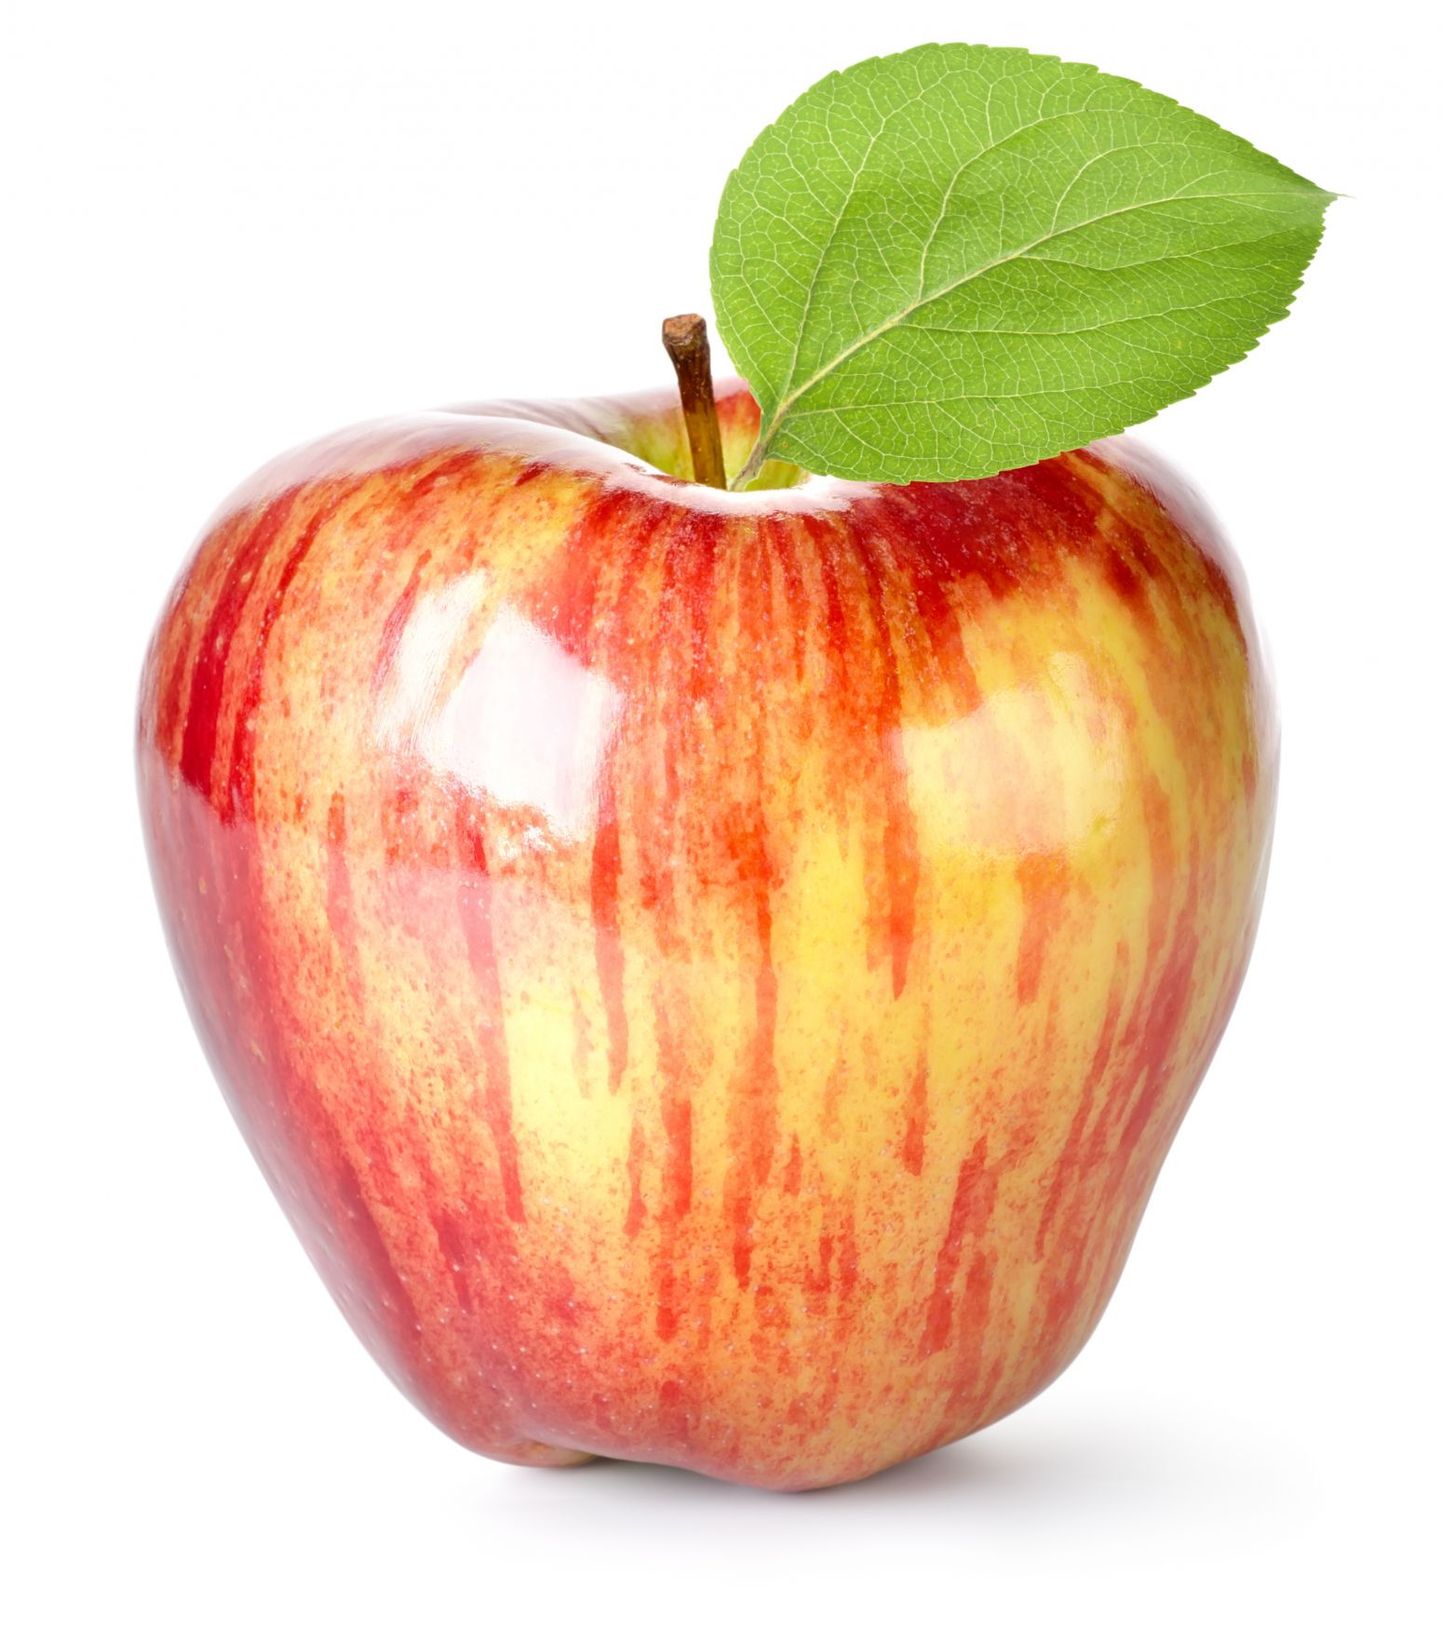 Õuna tasub enne söömist pesta.